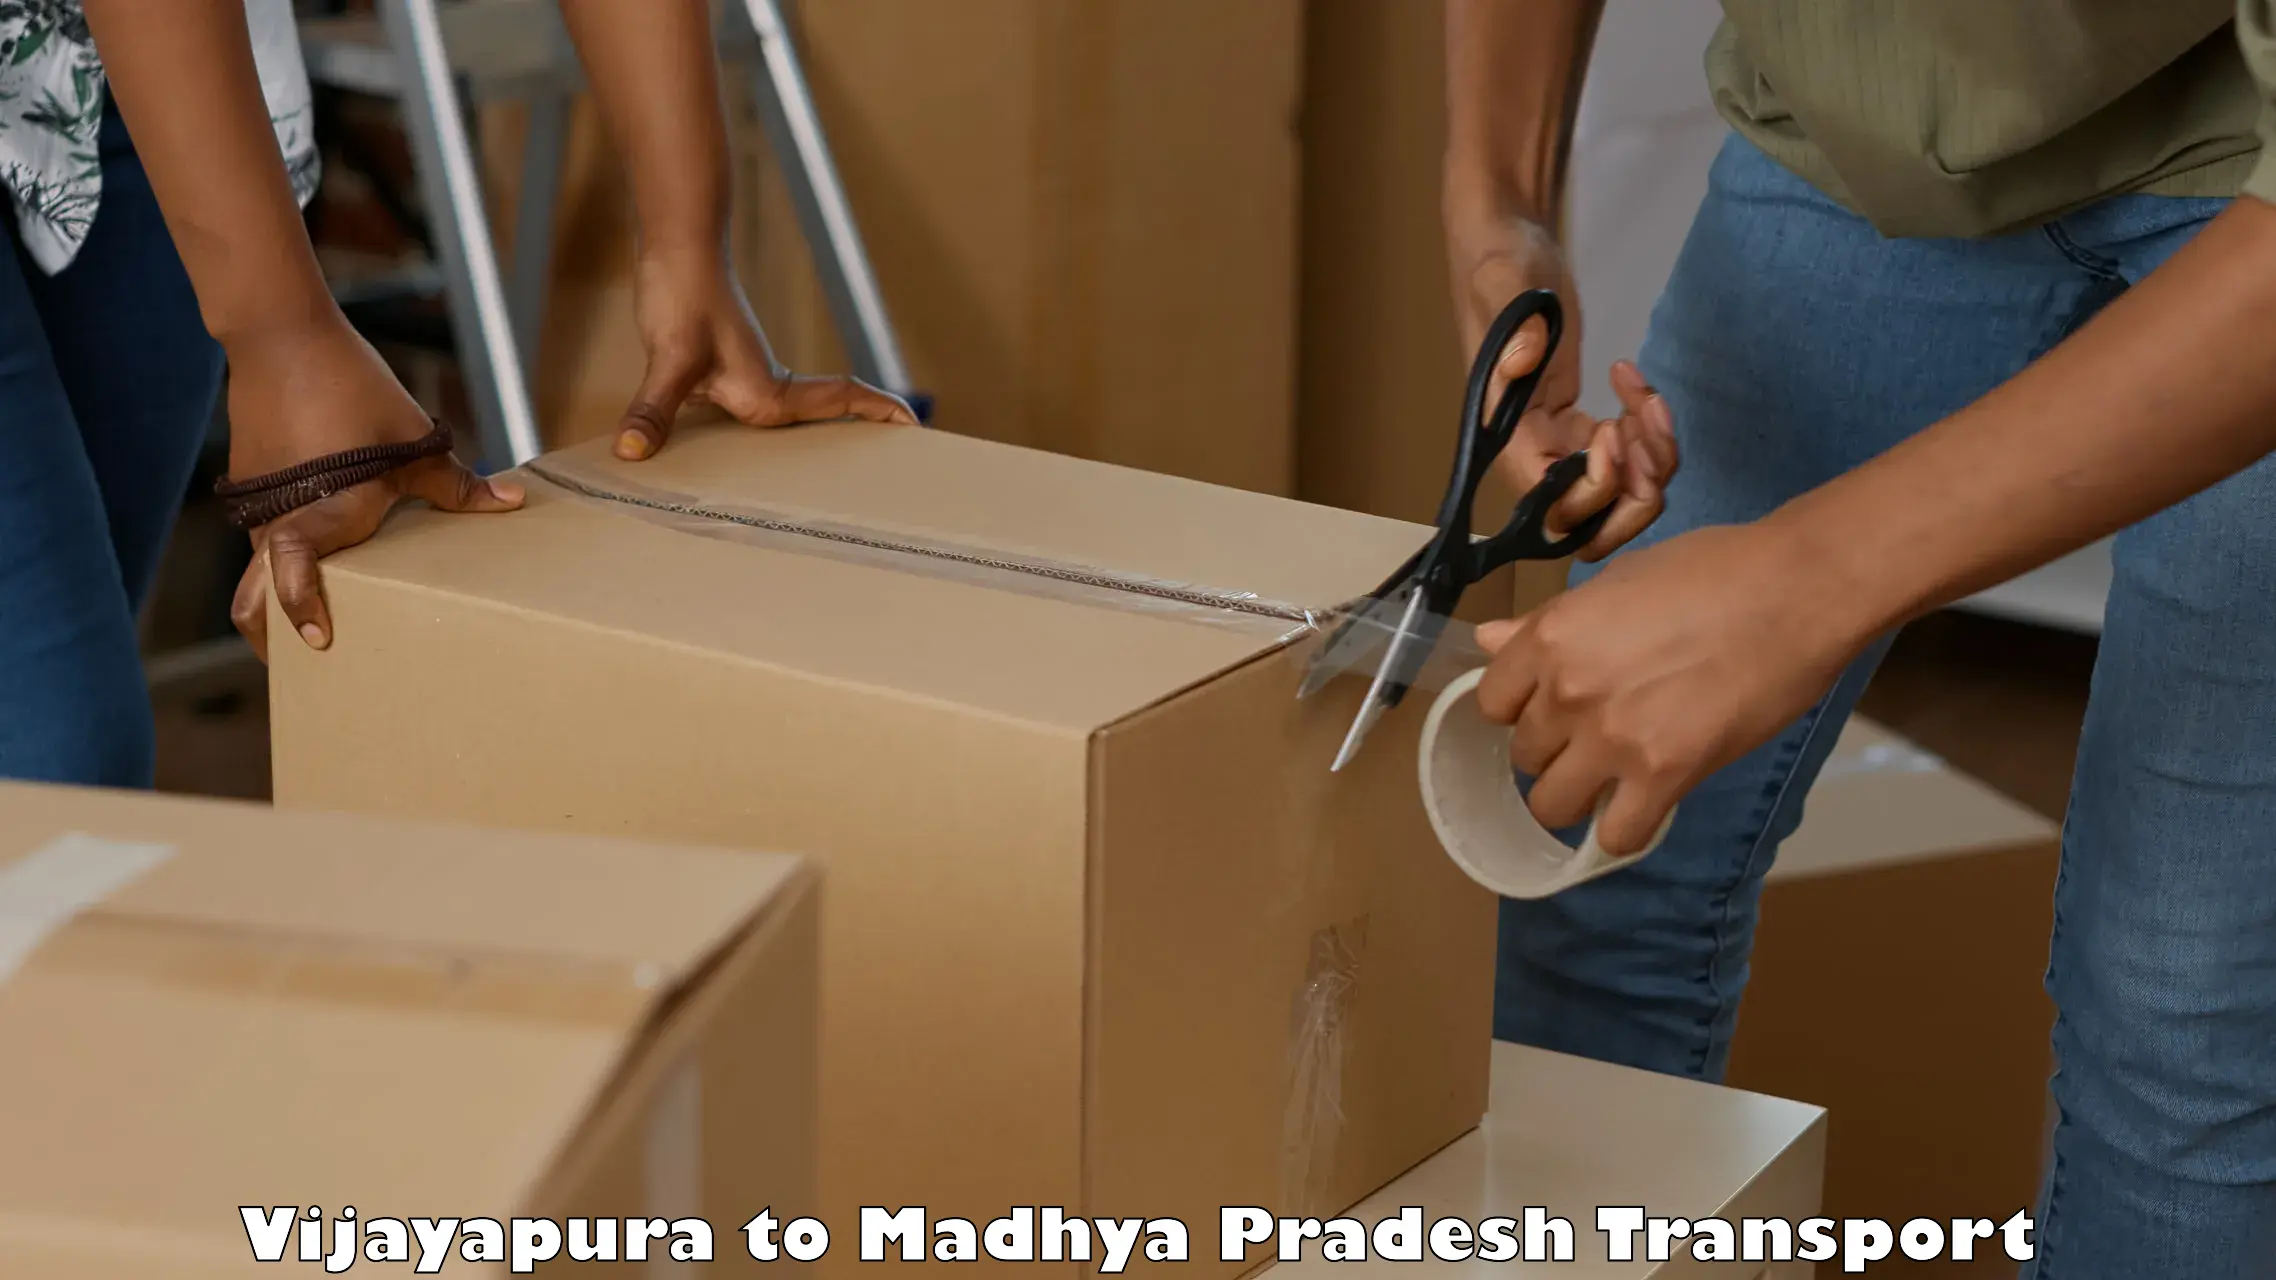 Express transport services Vijayapura to Sausar